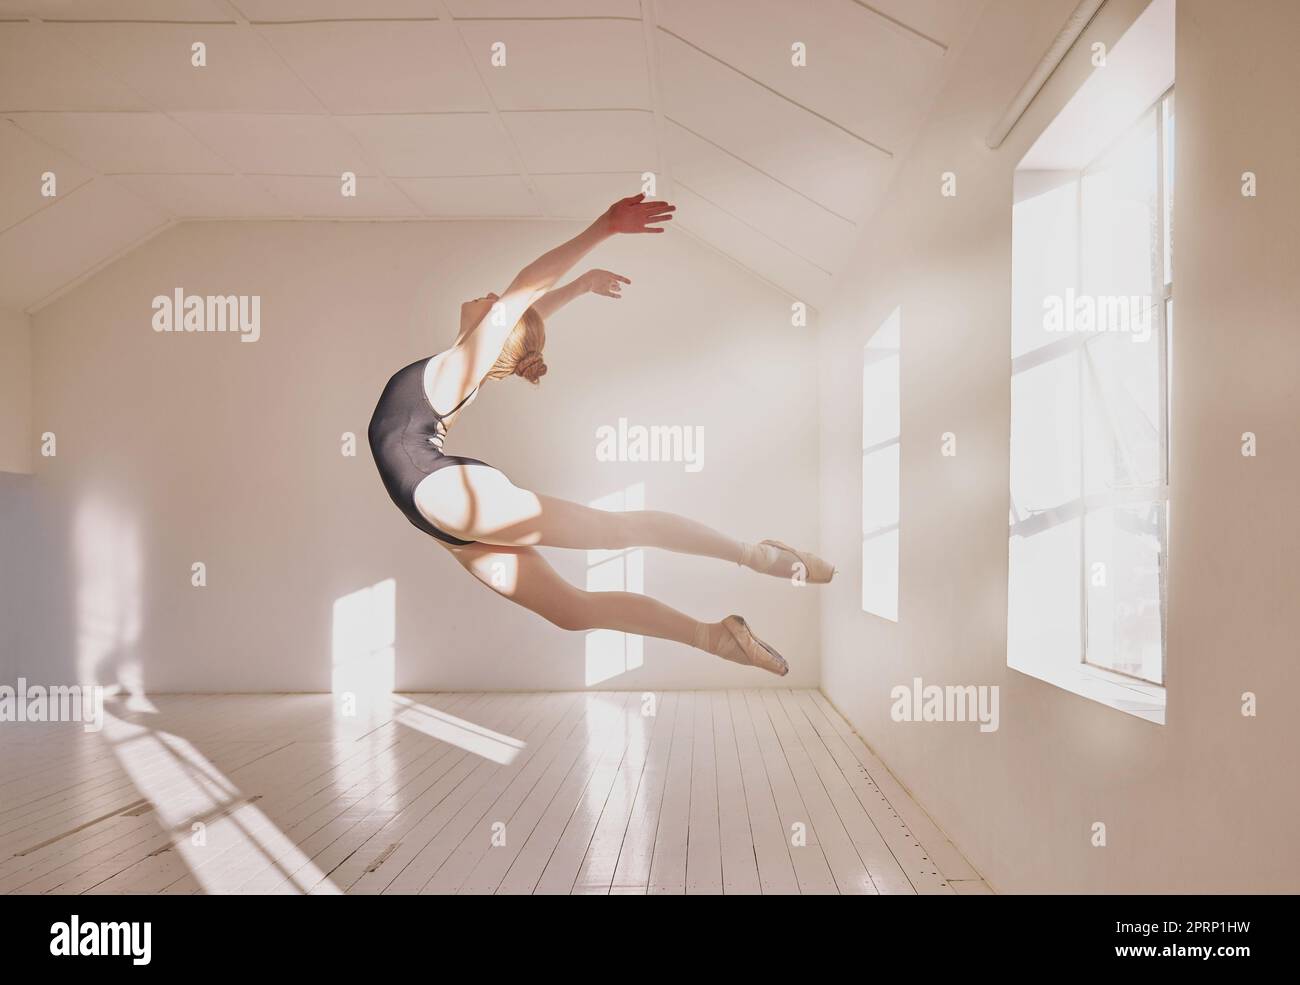 Balletttänzerin, die in einem Tanzstudio tanzt, weiße Wände und Sonnenlicht. Junge Berufskraft, Kunst- oder Sportschülerin, die in einer kreativen Ballerina-Klasse in der Luft springt Stockfoto